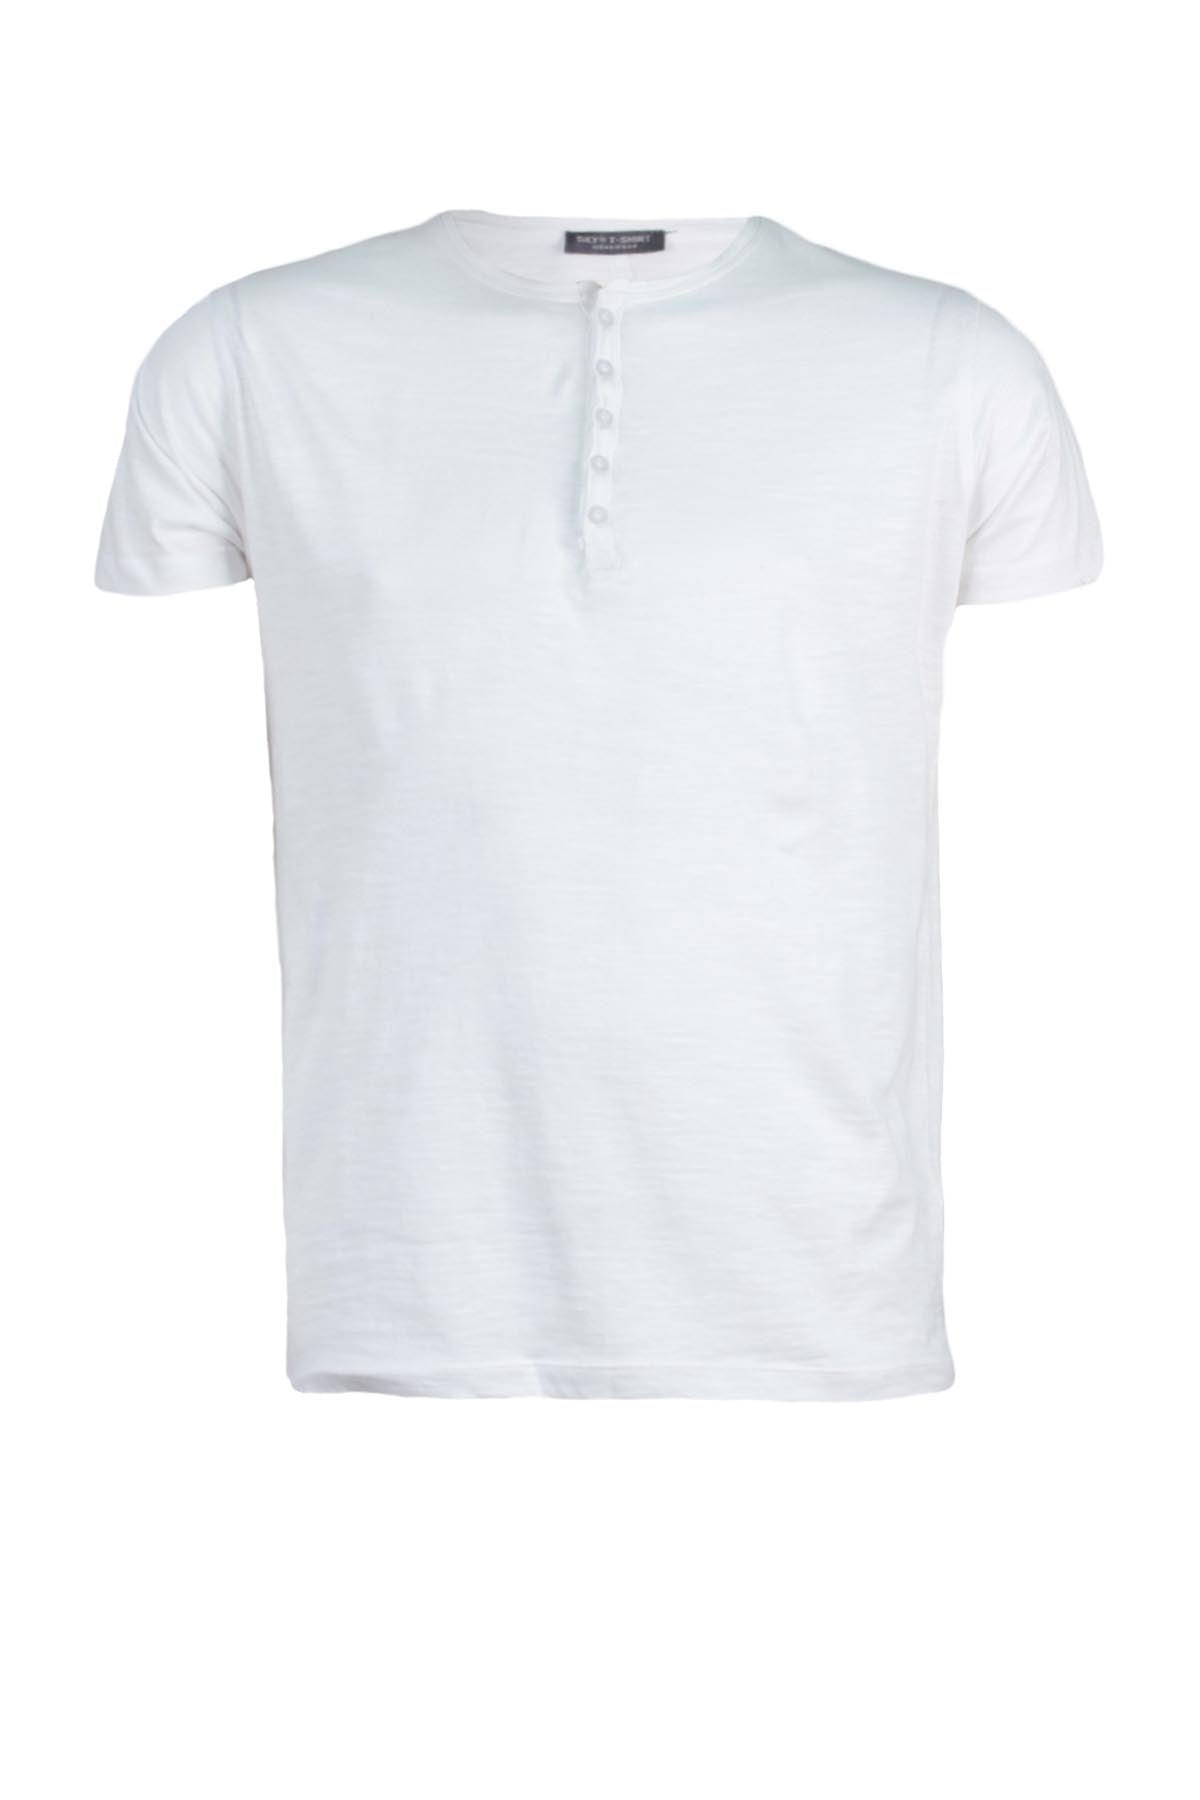 T-Shirt serafino - Maglietta da Uomo in cotone – Vivesto ...